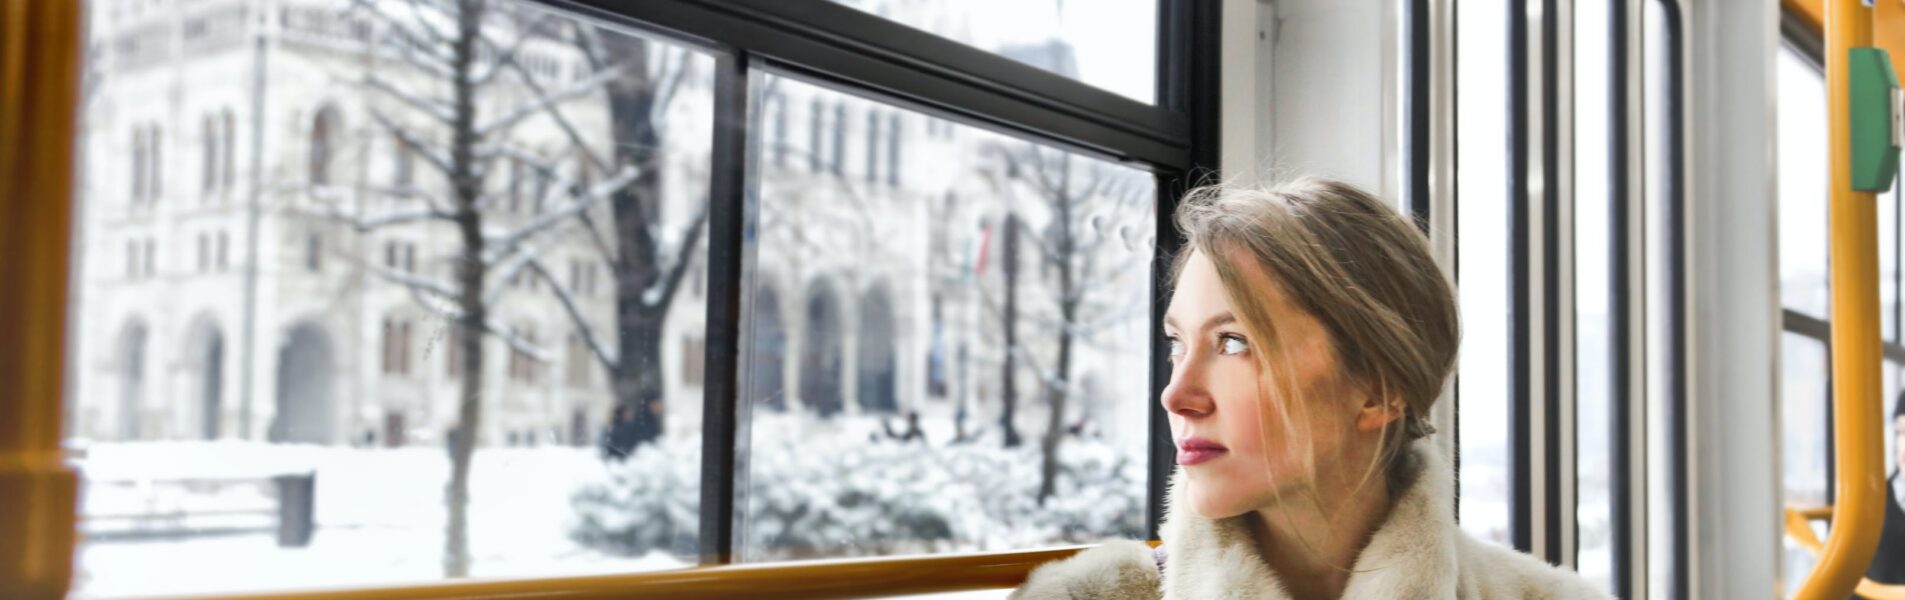 vrouw kijkt uit raam Immuunsysteem - YPC